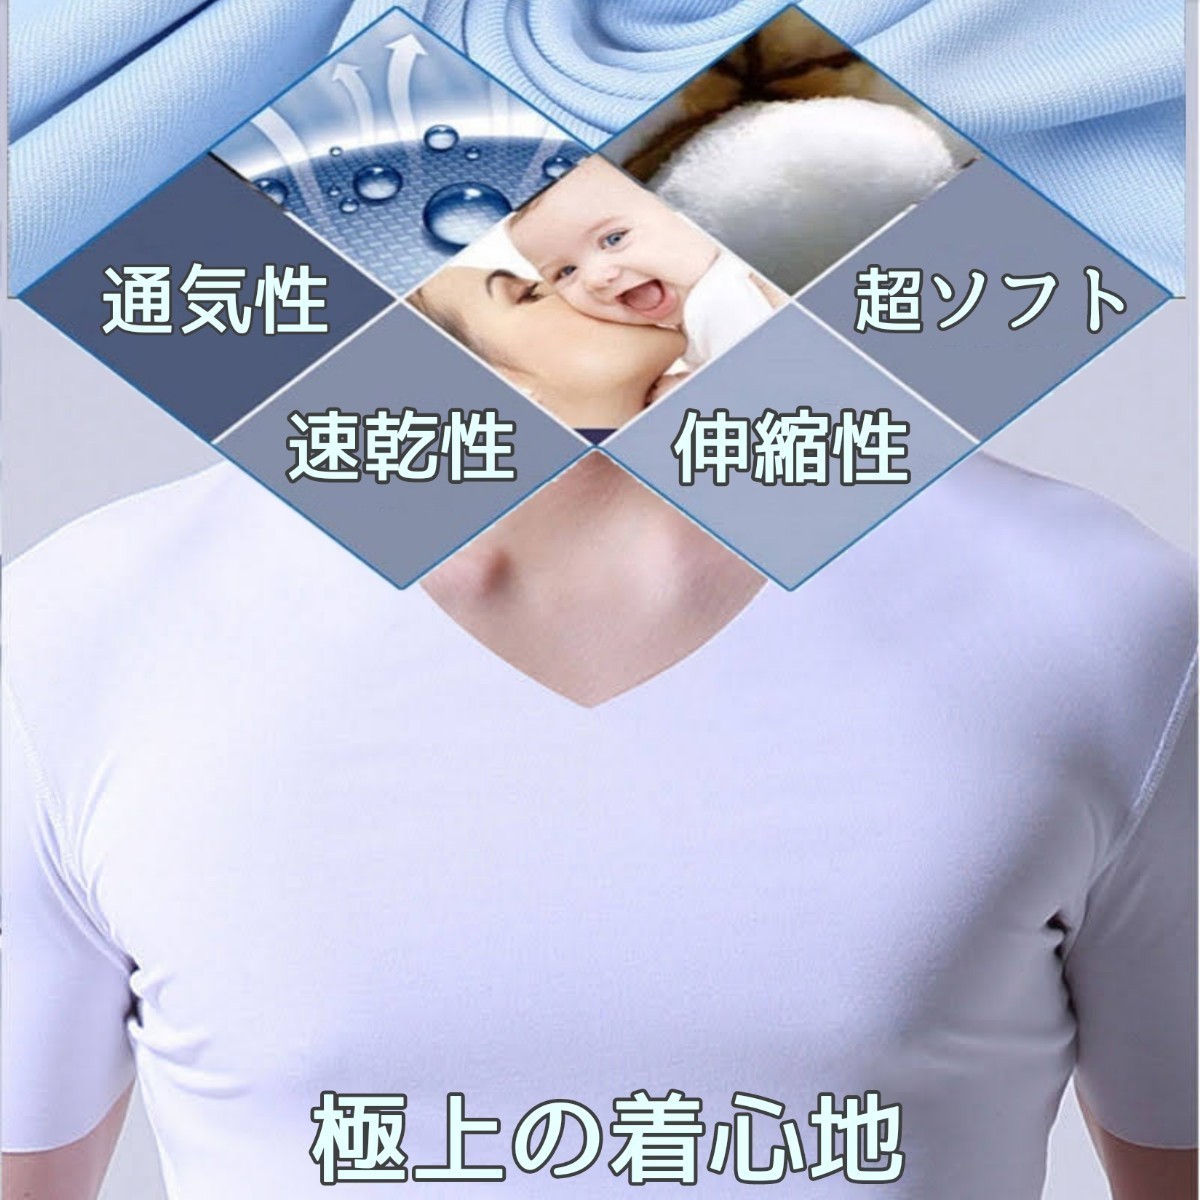 アイスシルクシャツ アンダーシャツ メンズシャツ インナーシャツ 男性 男性肌着 メンズ下着 メンズアンダーシャツ メンズ肌着 男性シャツの画像9